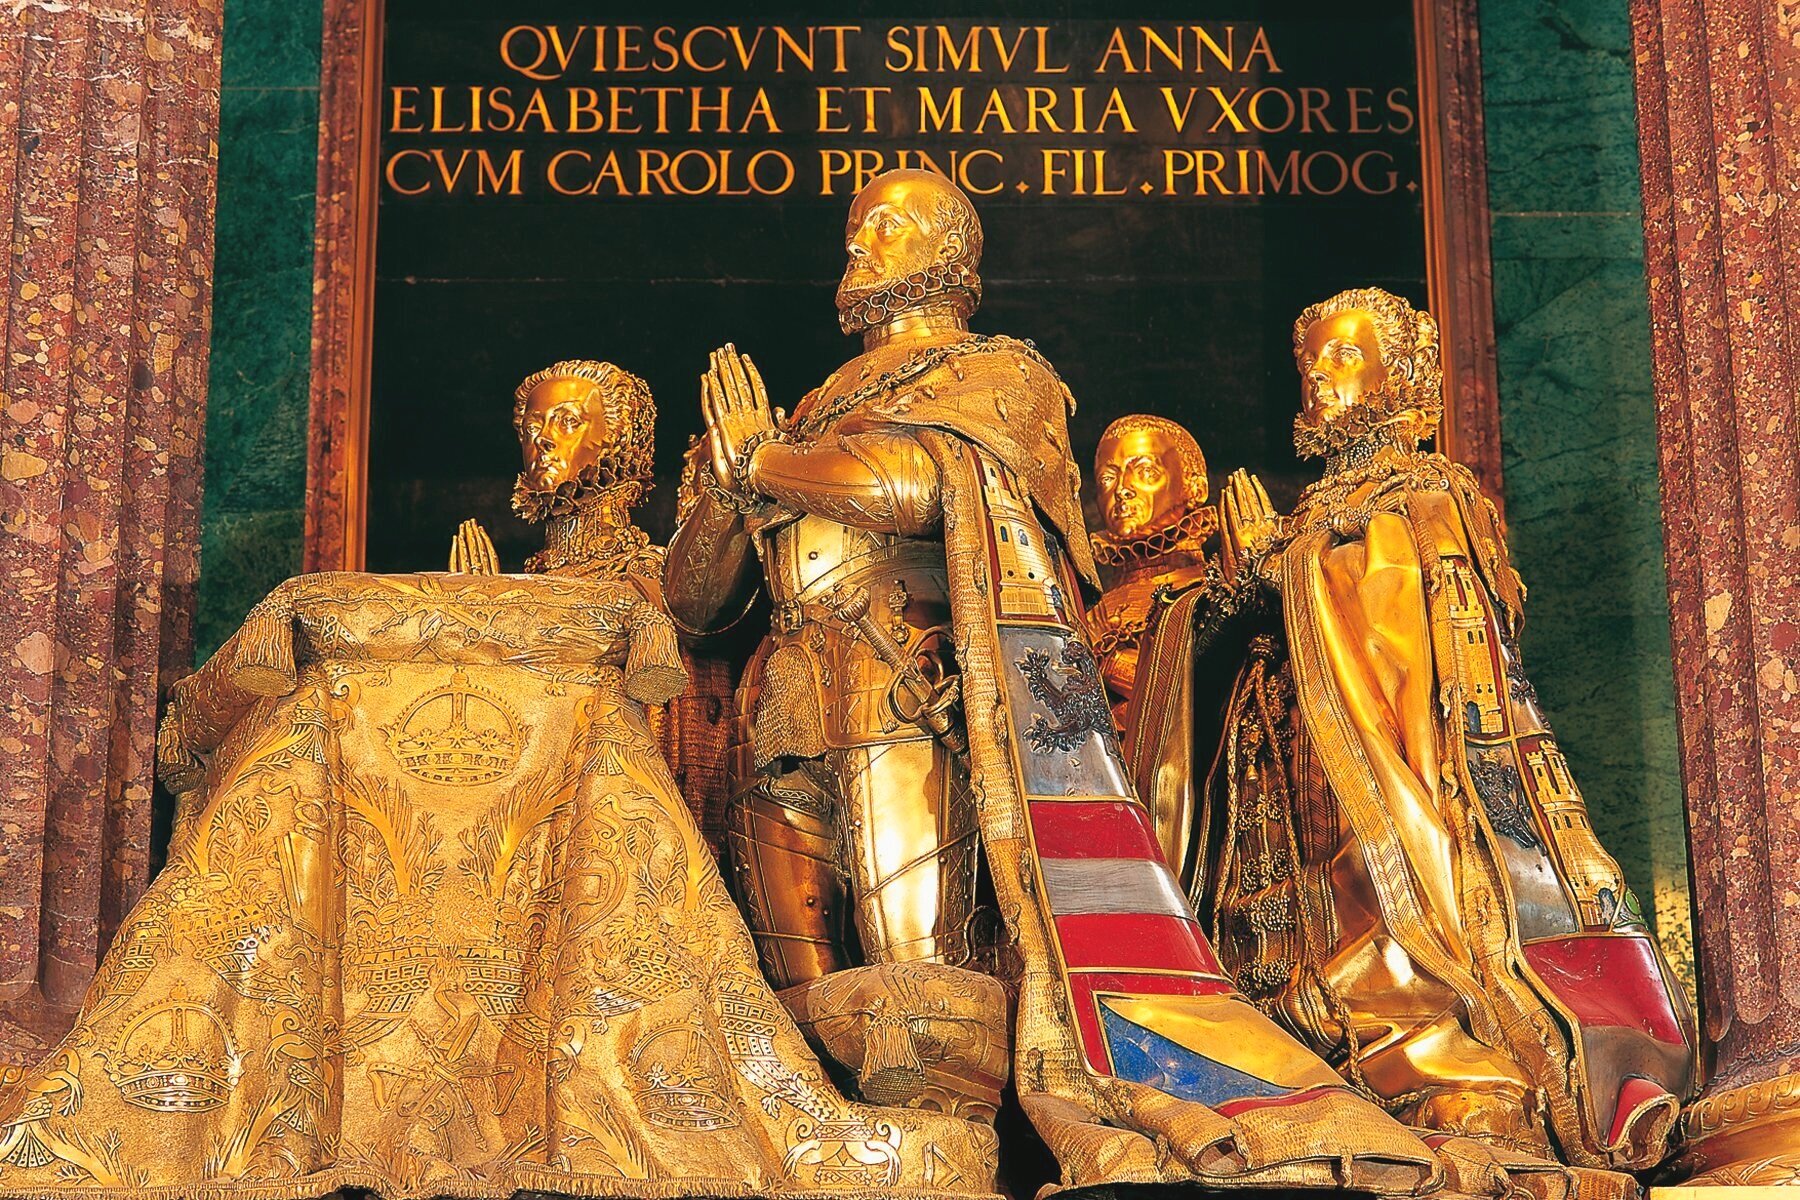 Felipe II’s Cenotaph